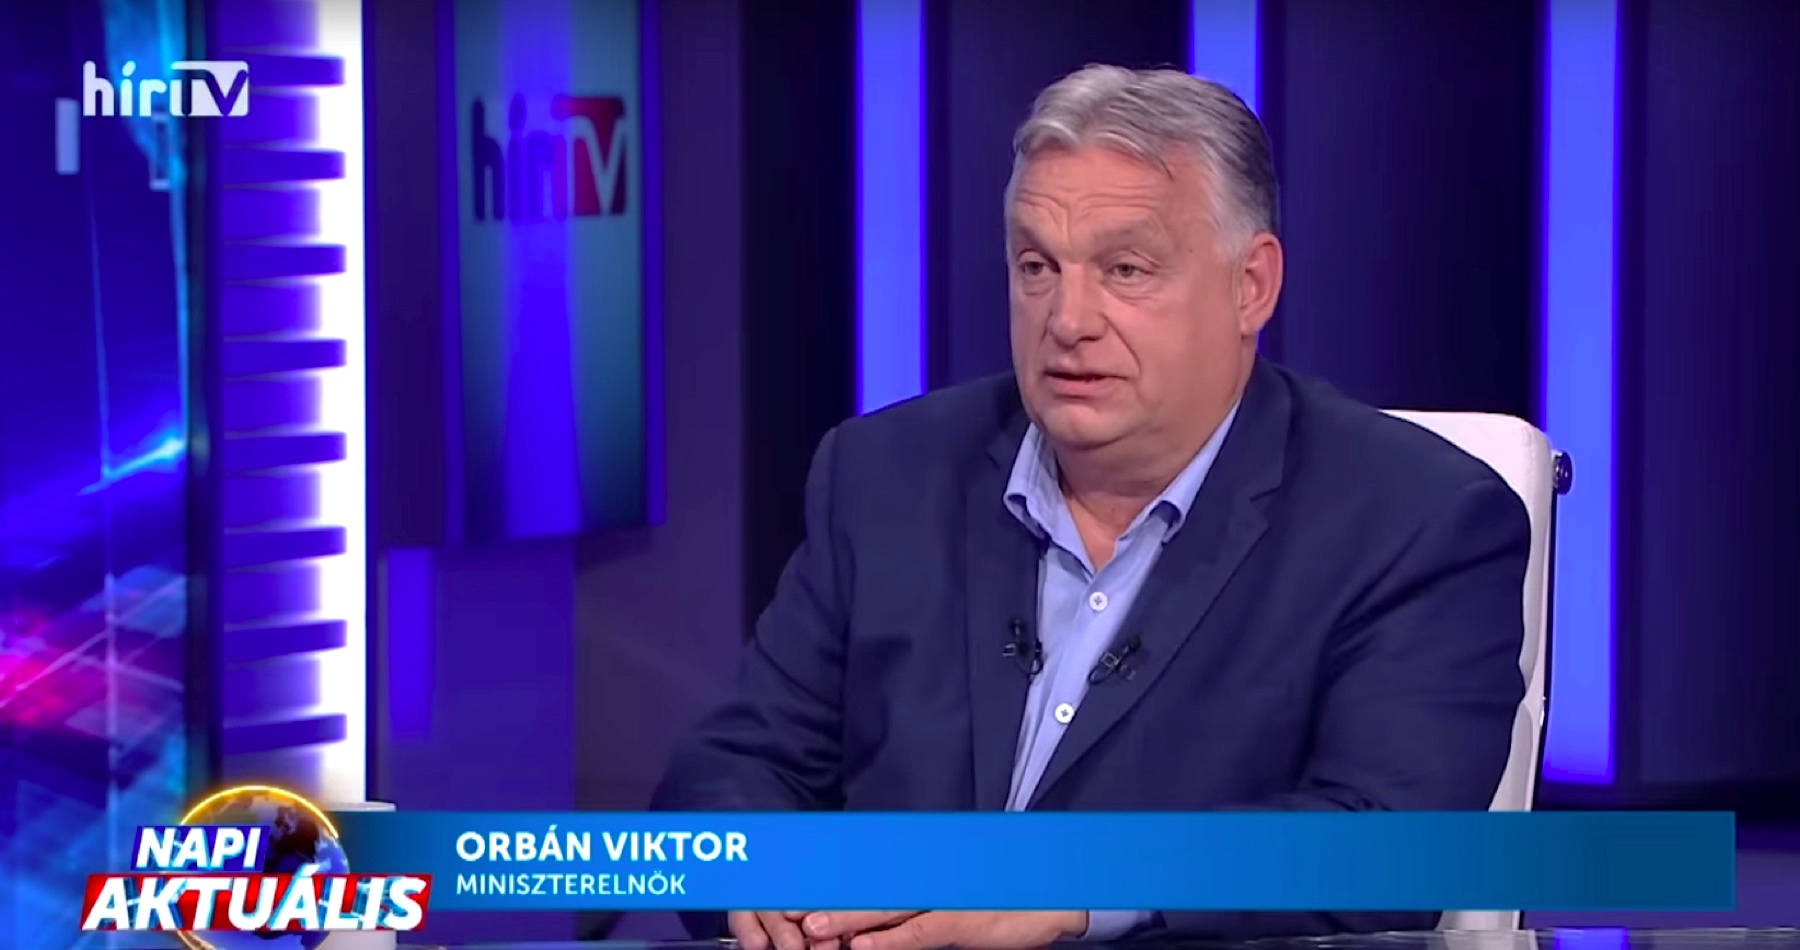 VIDEO: „Vojnoví štváči na Západe sa usilujú zmocniť na Ukrajine prírodných zdrojov. Dodávatelia zbraní, veritelia a ďalší špekulanti hľadajú príležitosť, ako sa obohatiť, a tlačia vojnovú mašinériu dopredu,“ skonštatoval Orbán